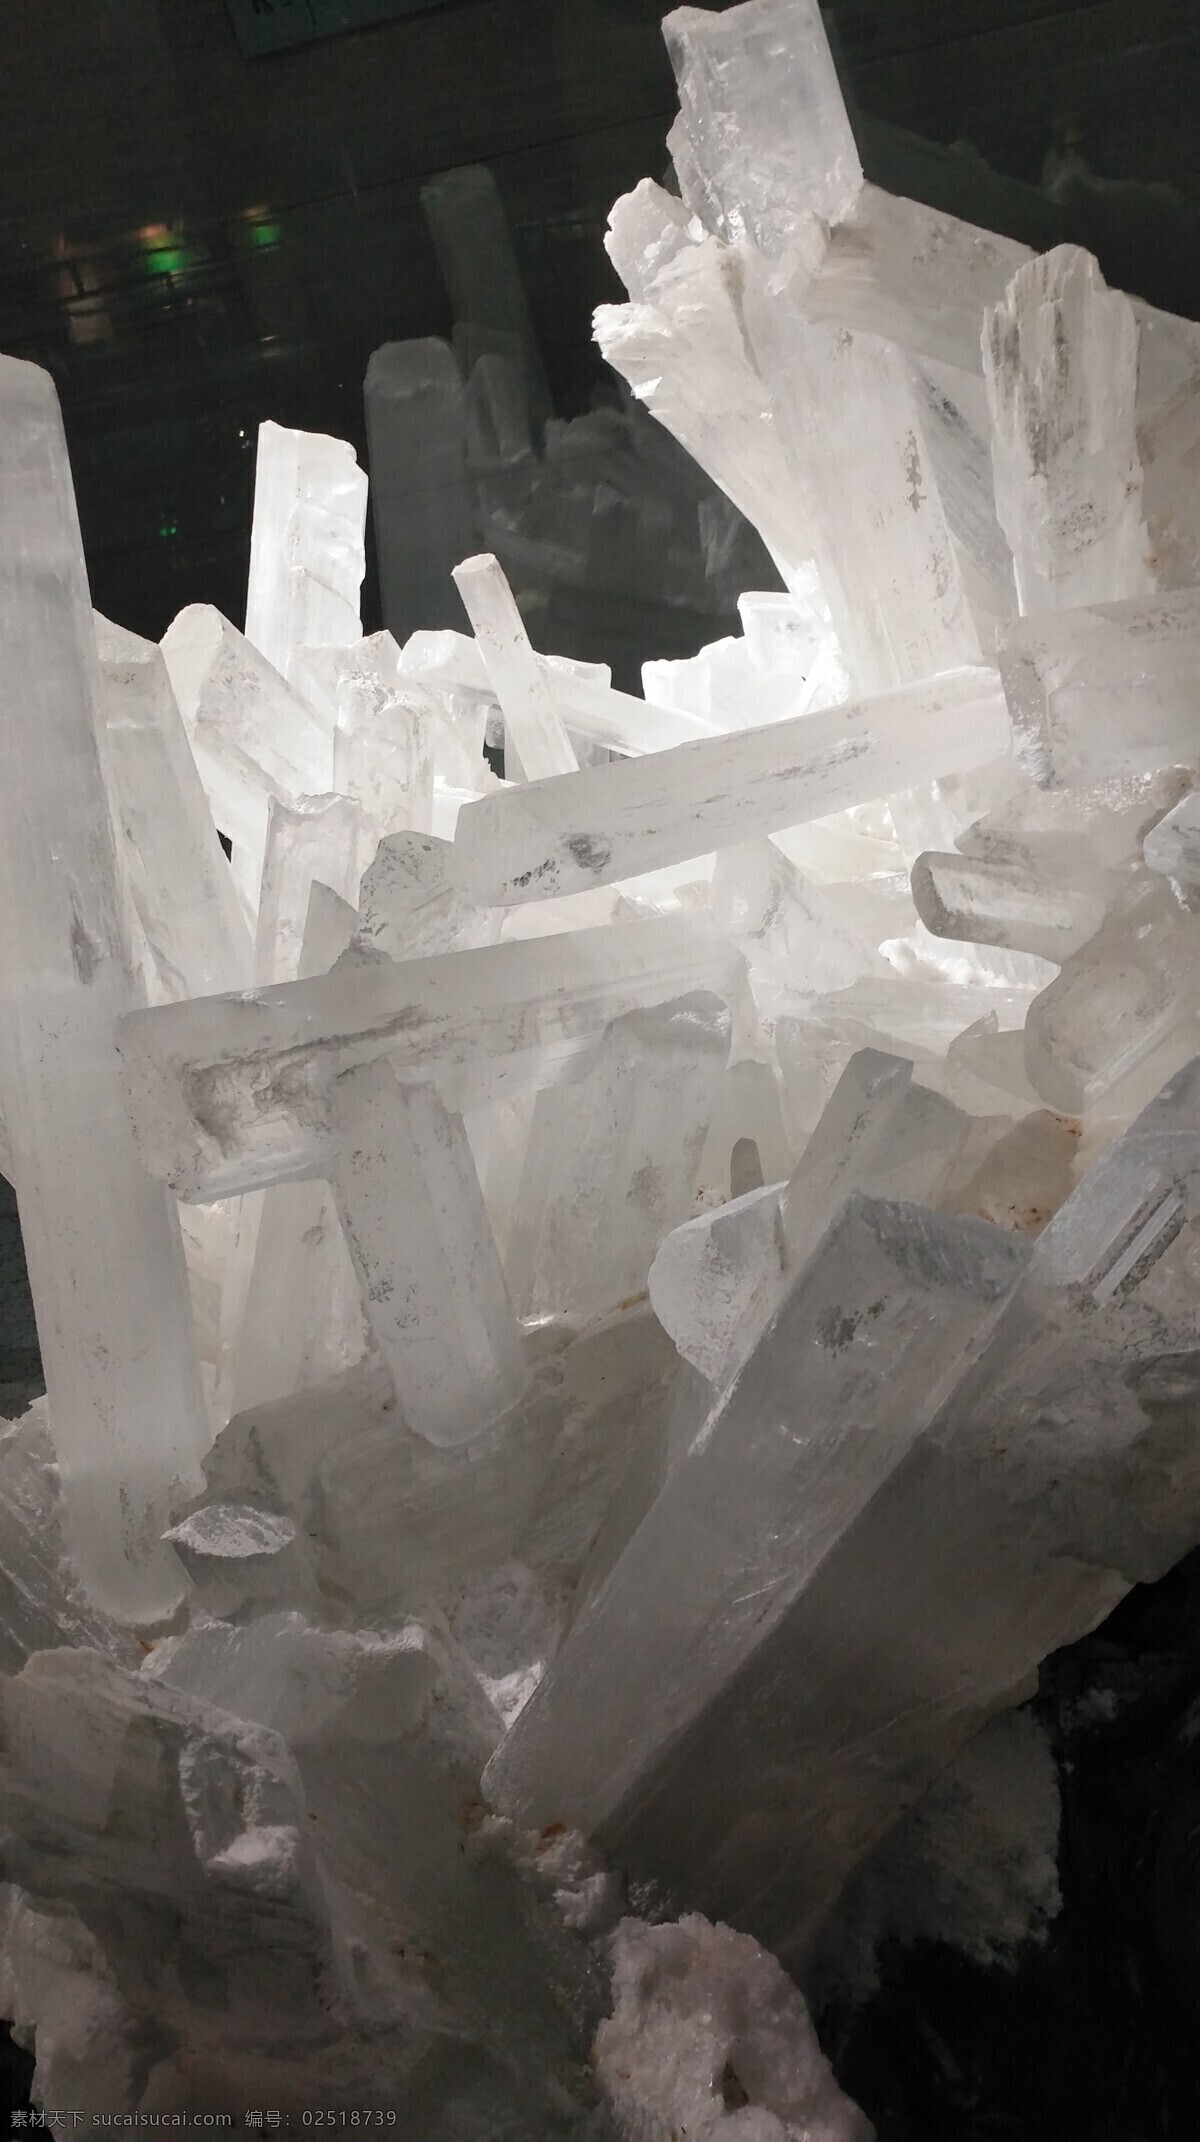 结晶体 水晶 金刚石 结晶 玻璃 透明晶体 自然景观